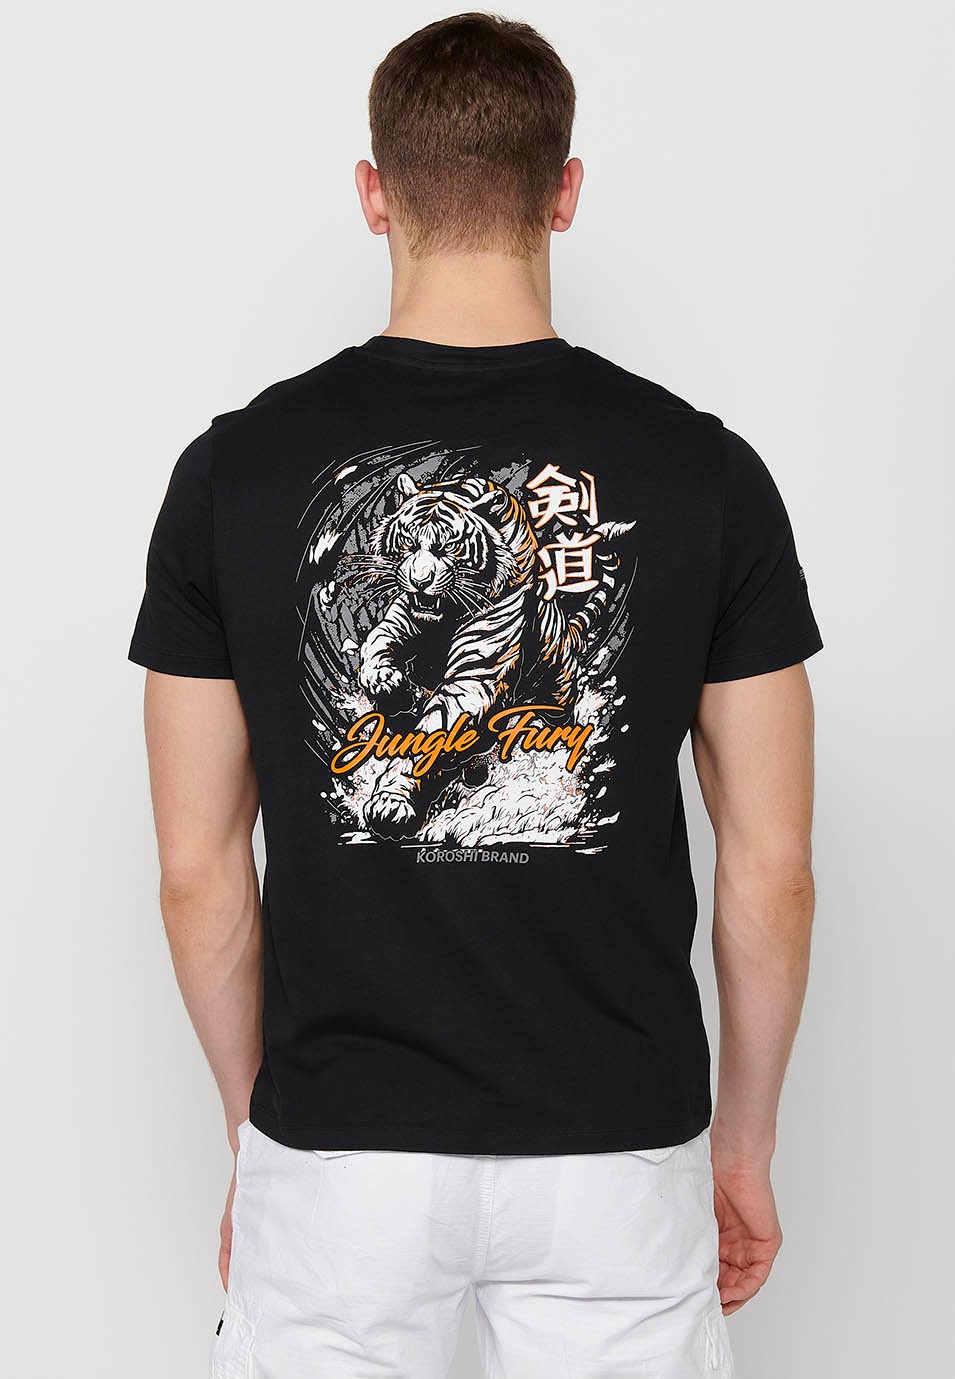 T-shirt manches courtes en coton imprimé jungle tigrou au dos, coloris noir pour homme